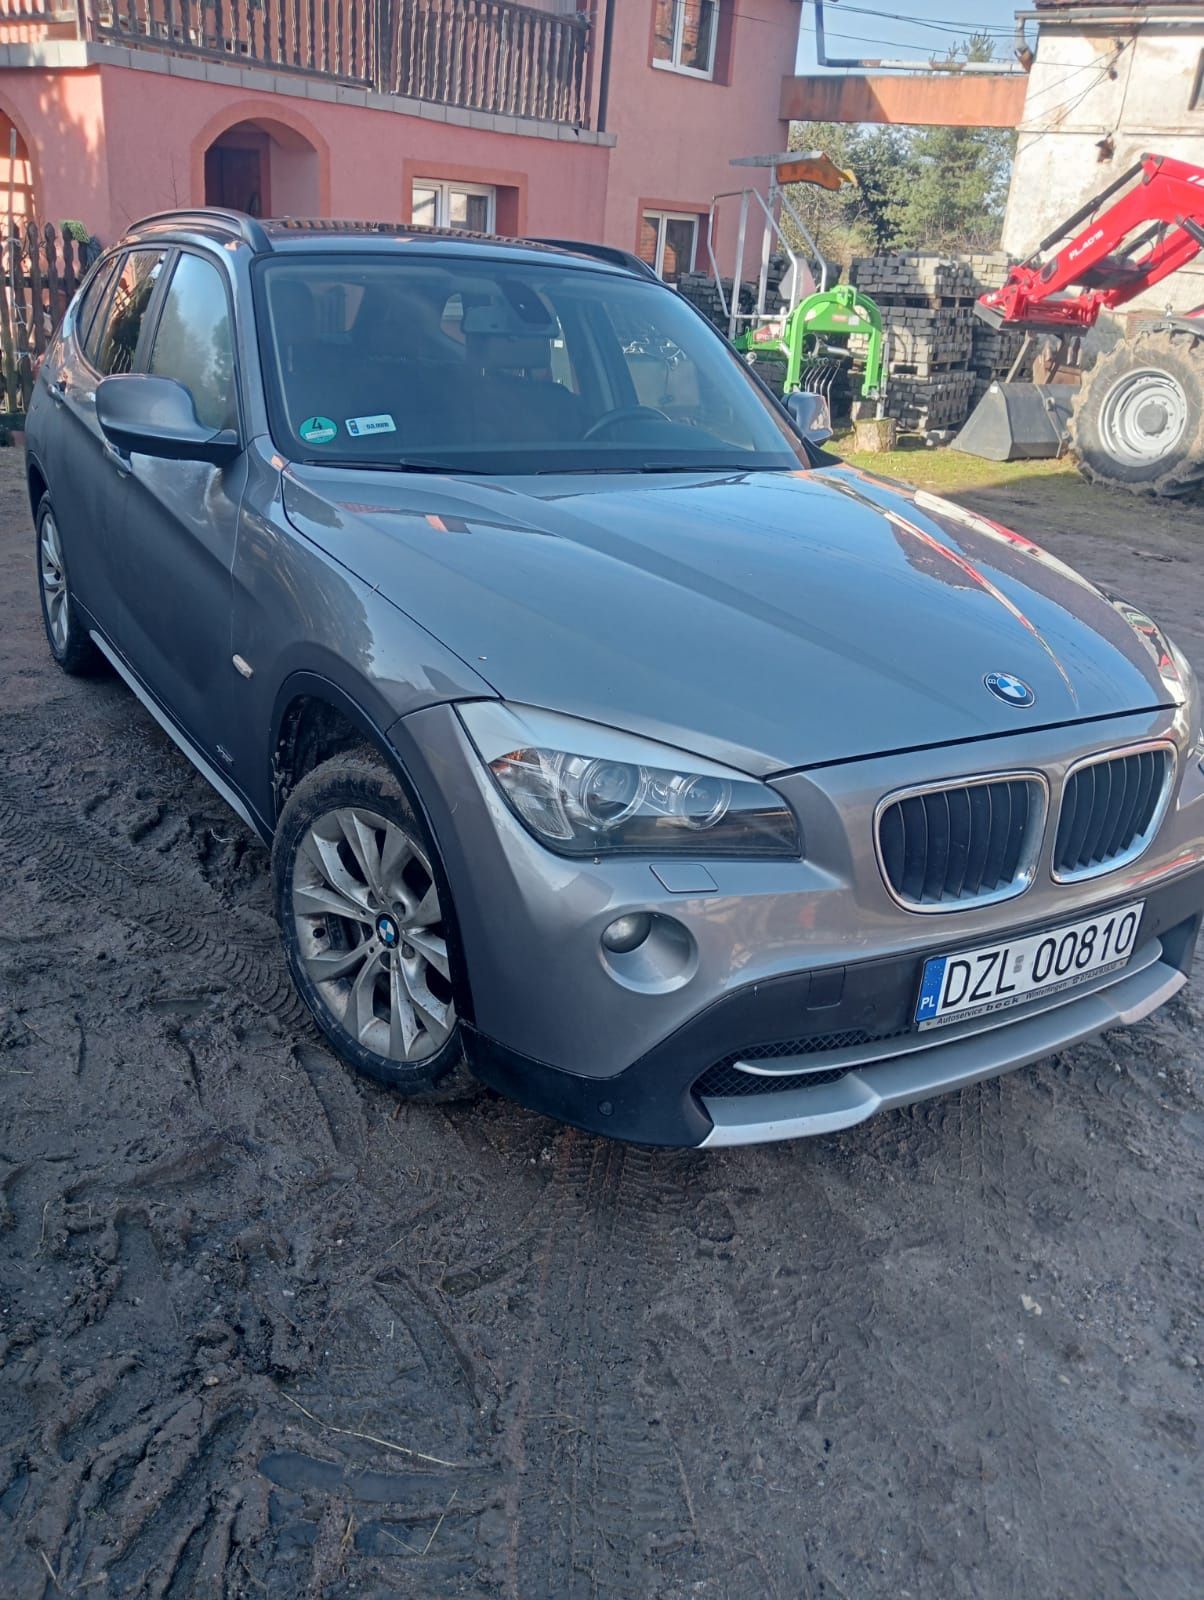 BMW X1 2.0 Diesel